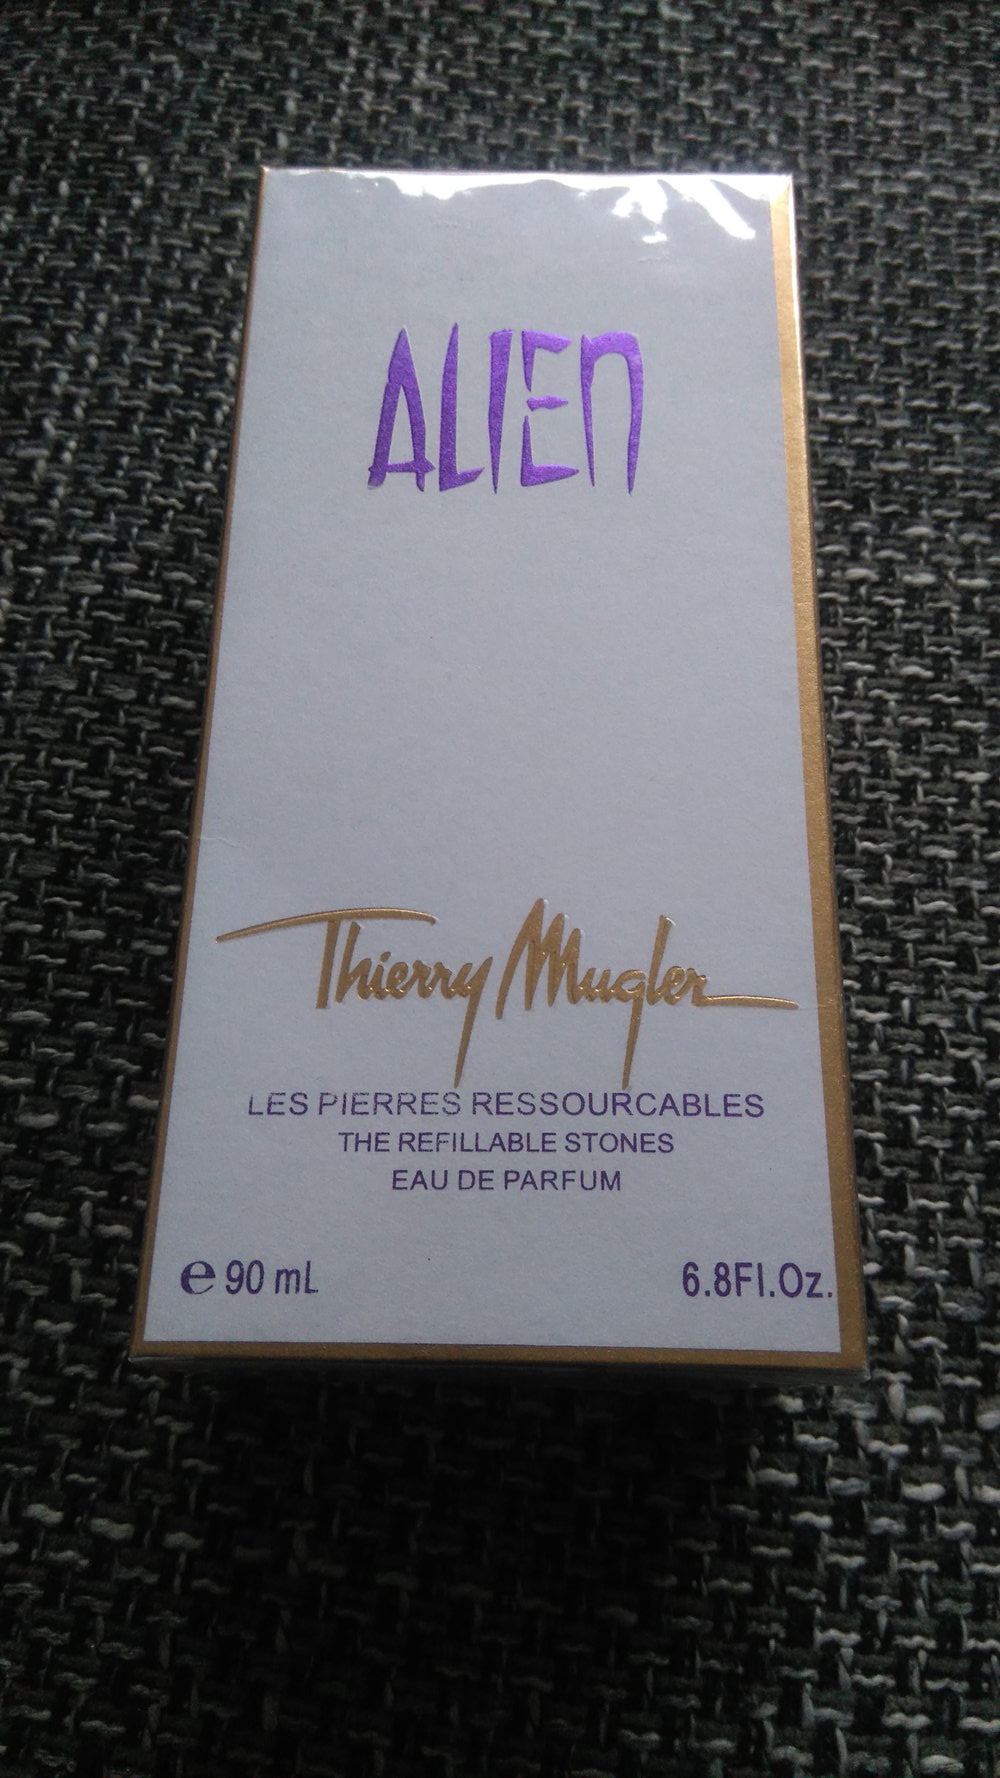 Unbekannt - Alien thierry mugler Parfüm neu 90 ml ...